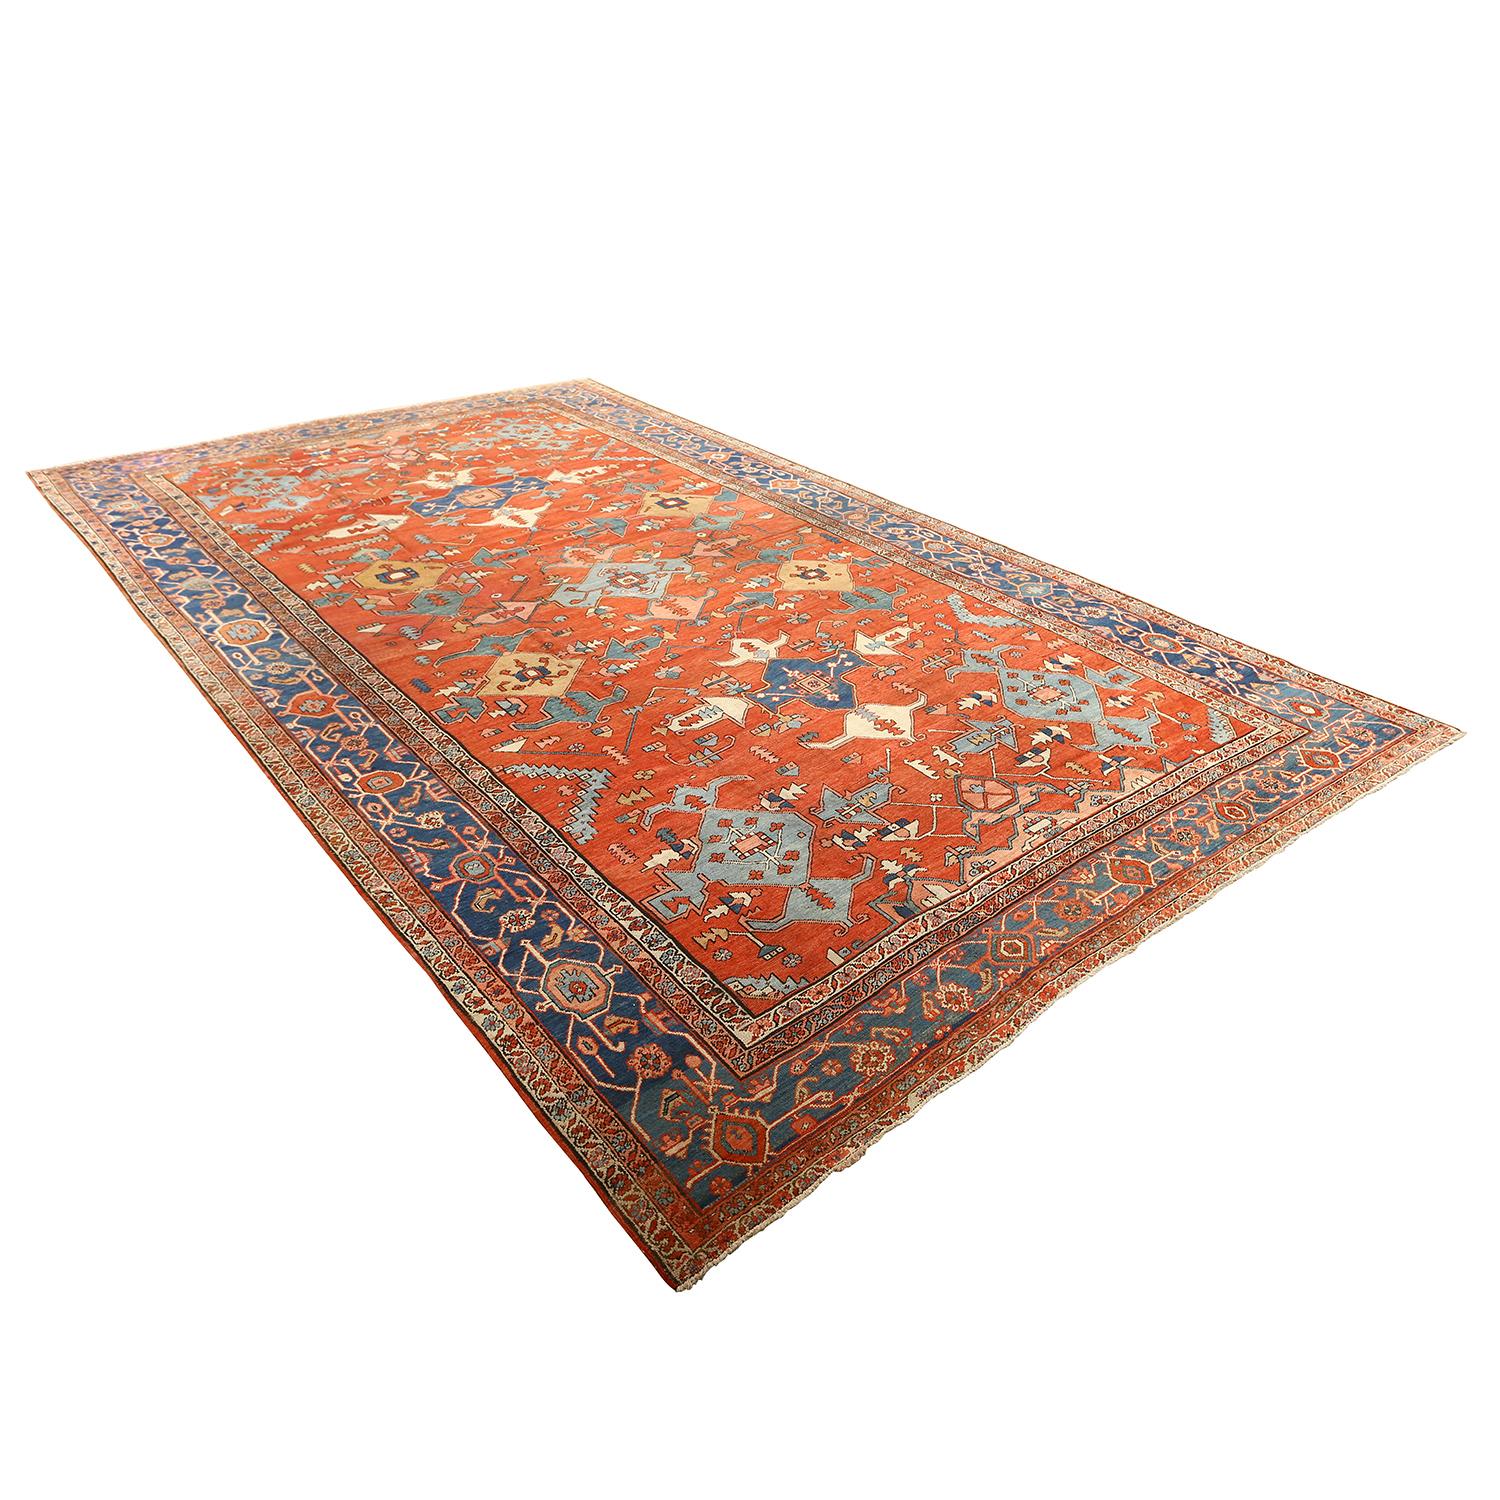 Ce tapis ancien de Serapi est un témoignage captivant de l'art et de l'héritage culturel de la région de Serapi, nichée au cœur de la Perse. Ces remarquables tapis, qui datent souvent d'un siècle ou plus, ne sont pas seulement des revêtements de